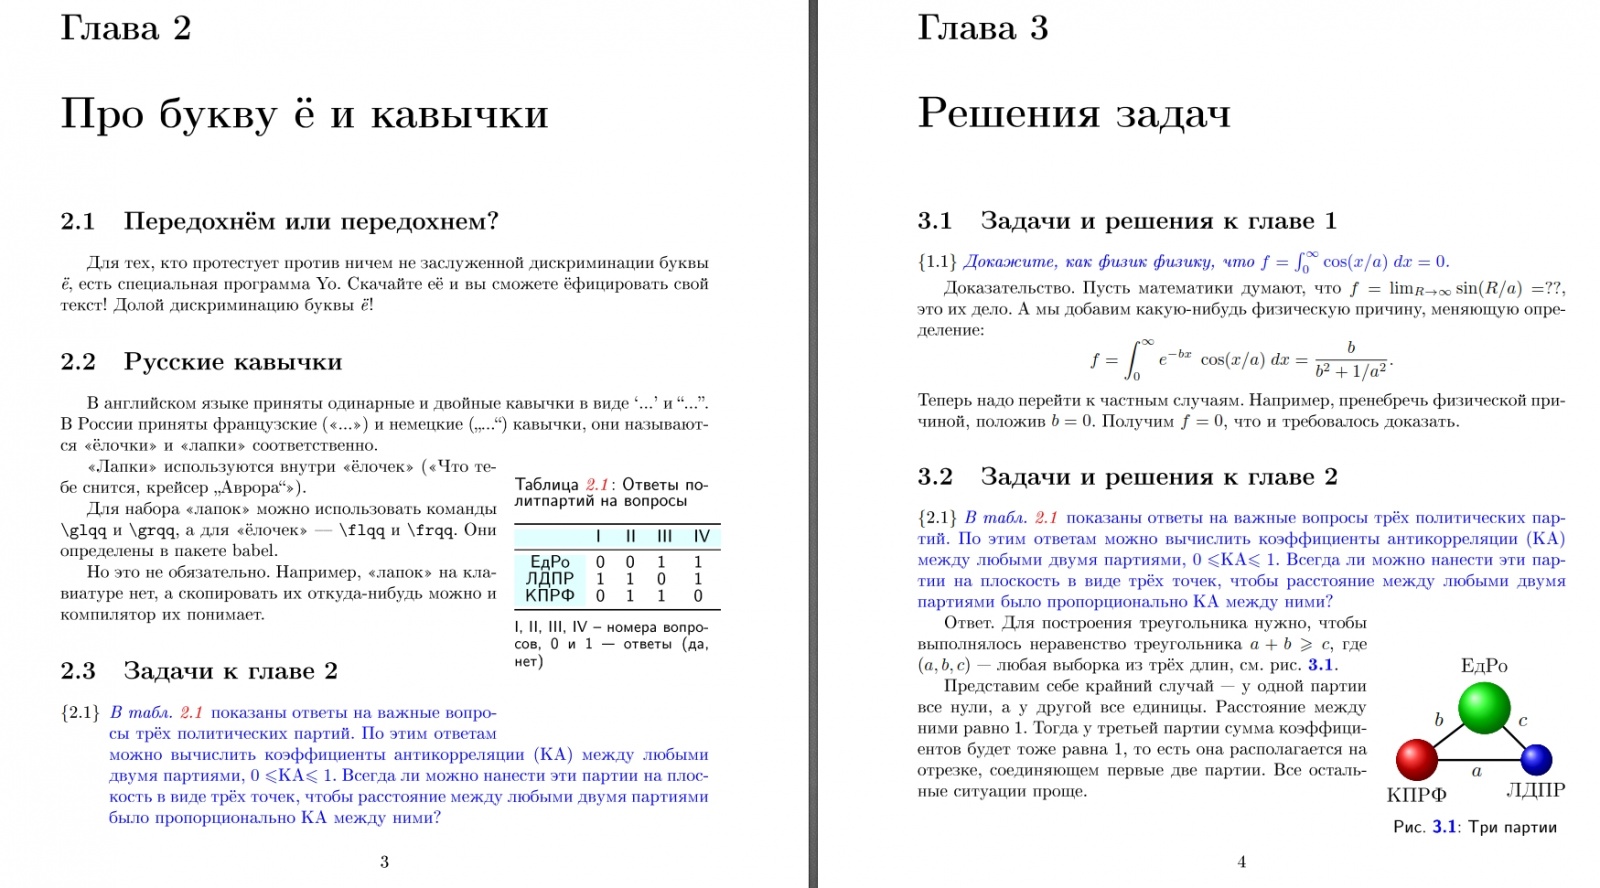 Как писать книгу по физике в LaTeX. Cтатья 1 - 10